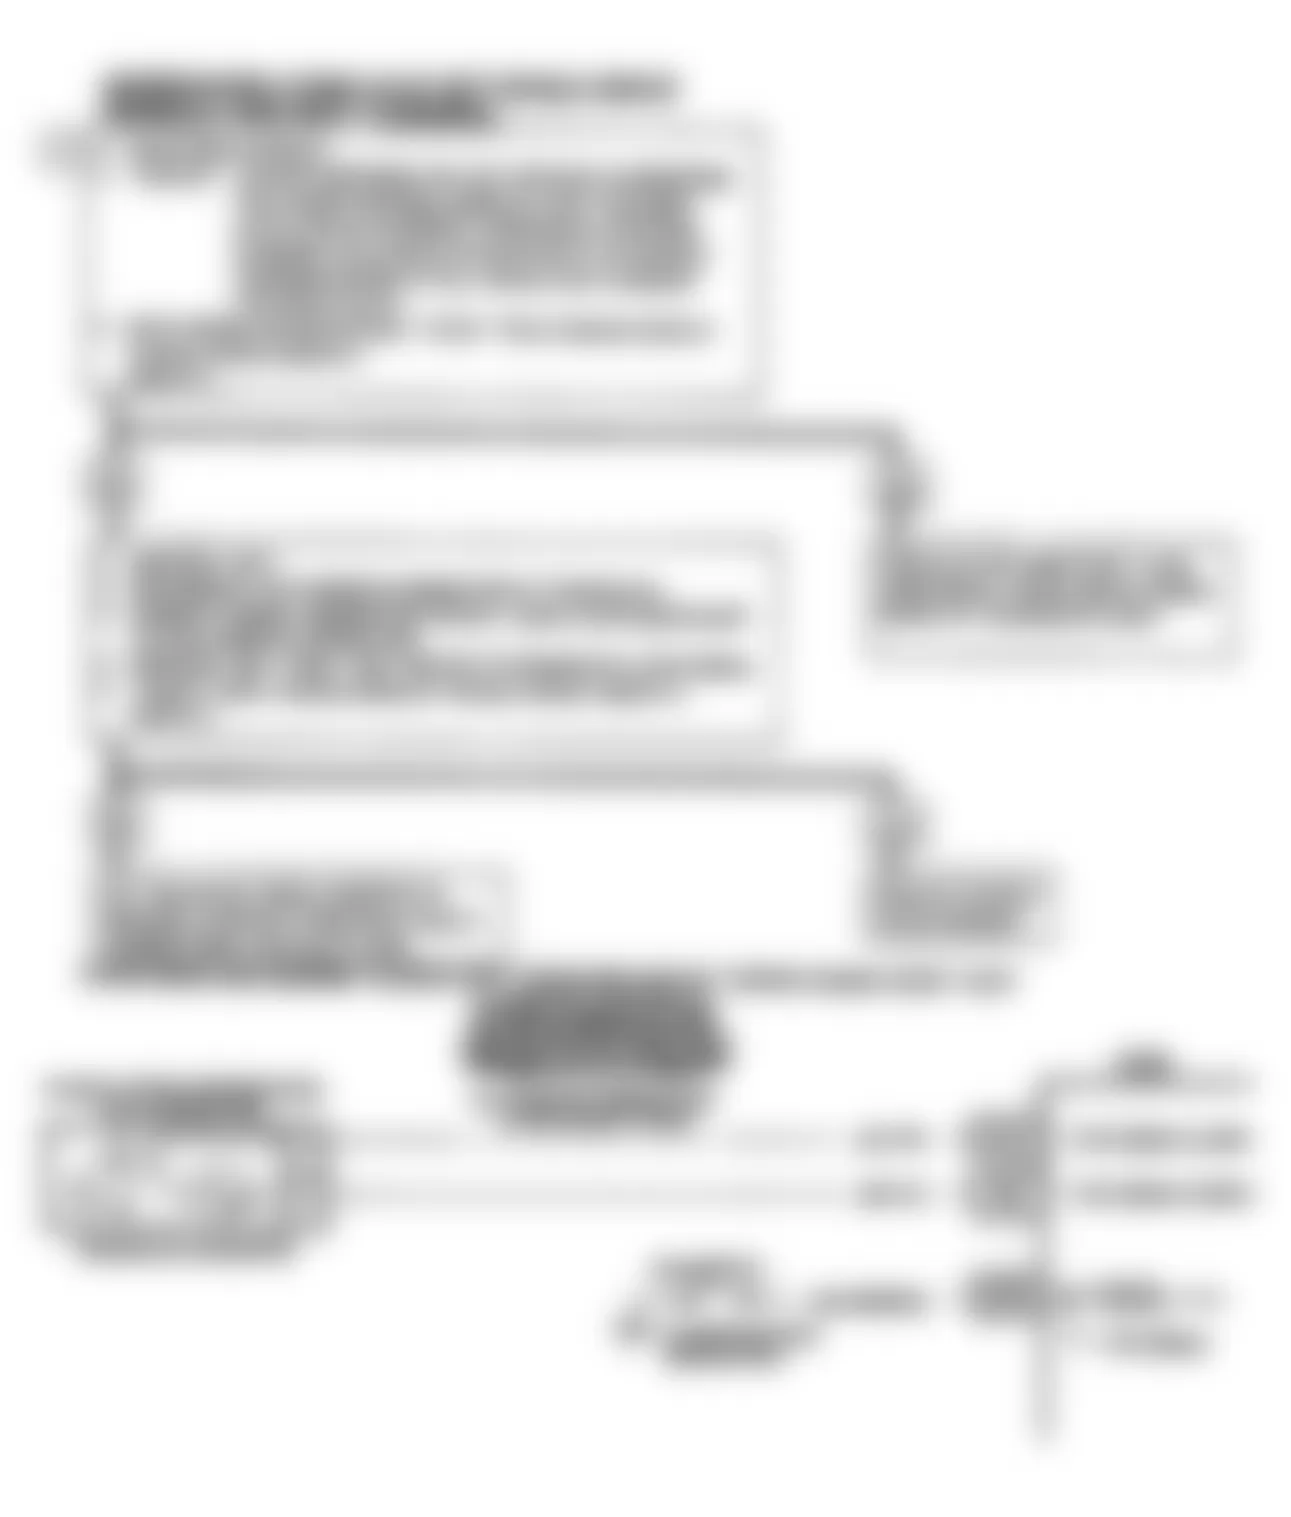 Chevrolet Corsica LT 1990 - Component Locations -  Code 24, VSS Ckt Diag & Flow Chart (J Body)